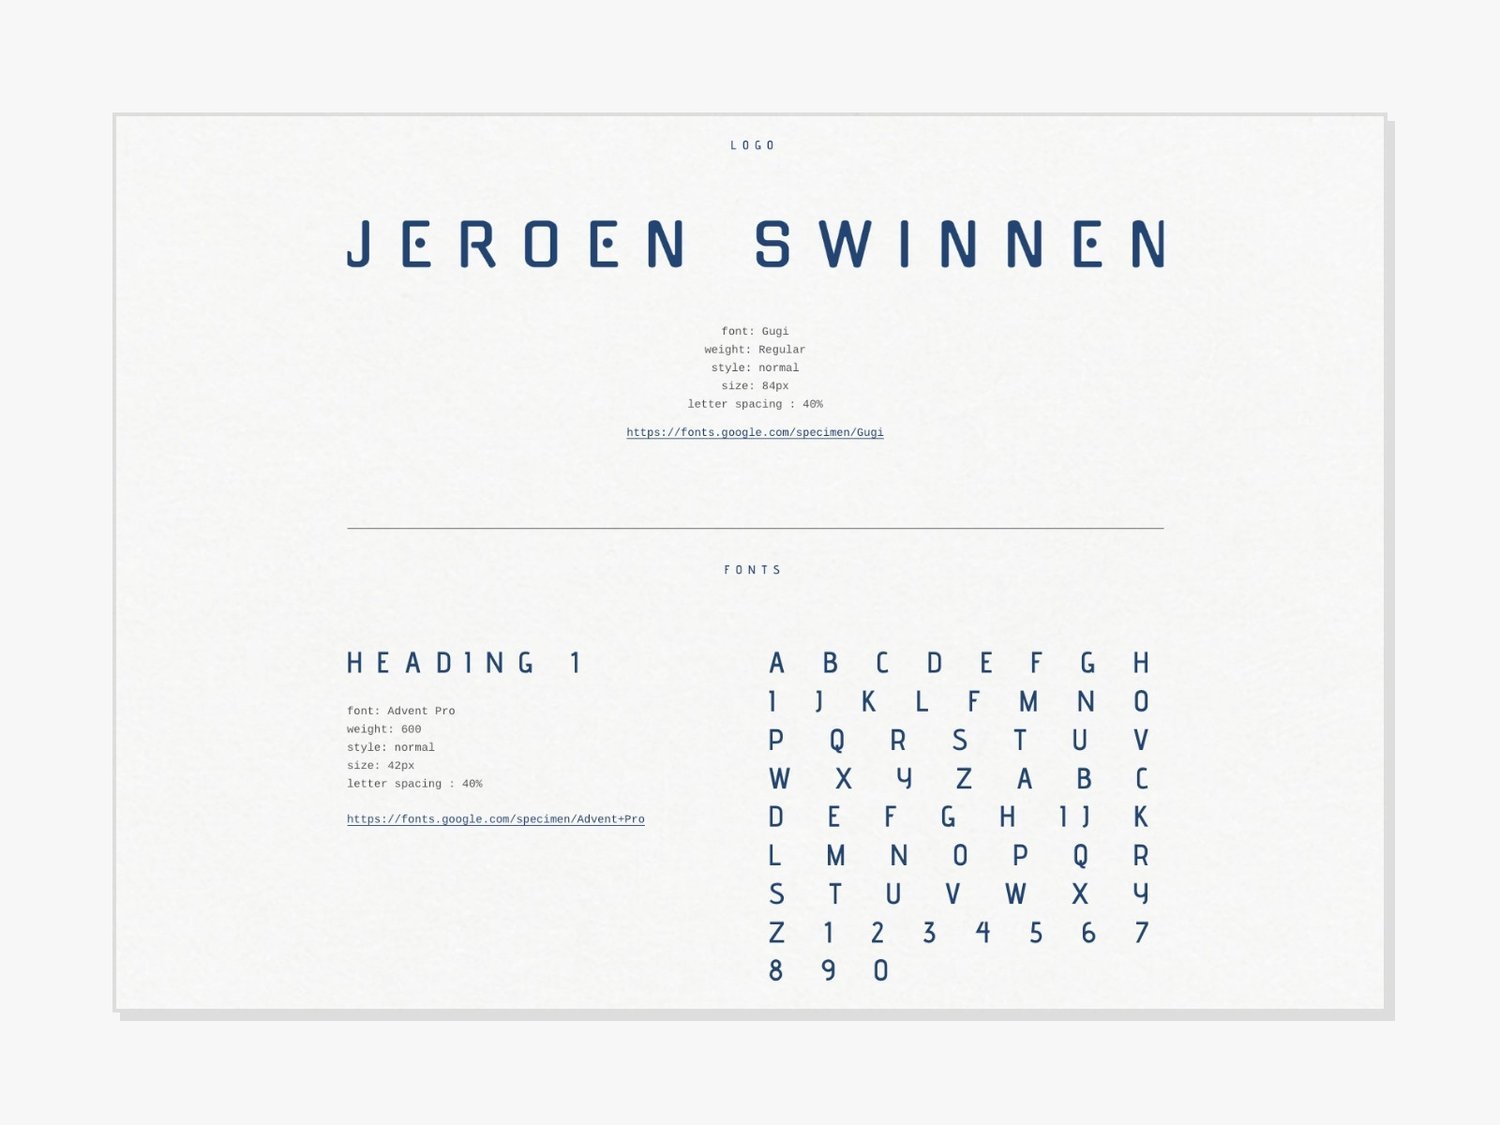 squarespace+website+jeroen+swinnen+by+studio+vncnt+vincent+jorissen.jpg